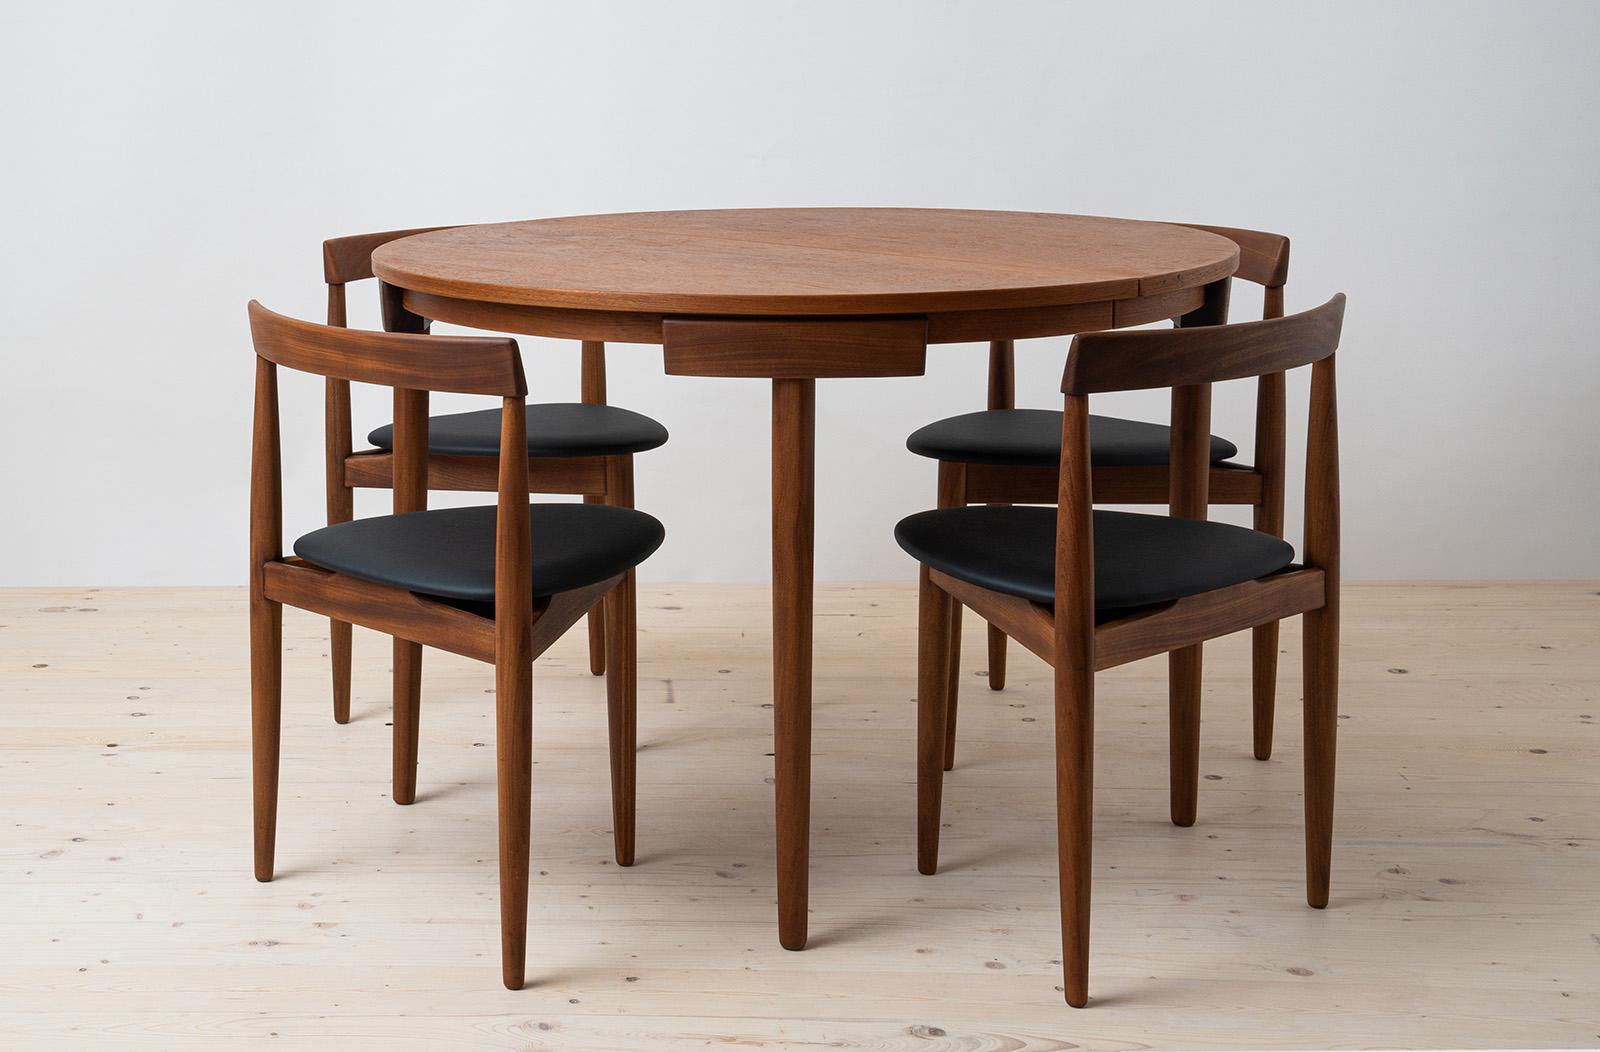 Esszimmer-Set aus Teakholz von Hans Olsen, 4 Stühle, runder Tisch, dänische Moderne, 1950er Jahre (Moderne der Mitte des Jahrhunderts)